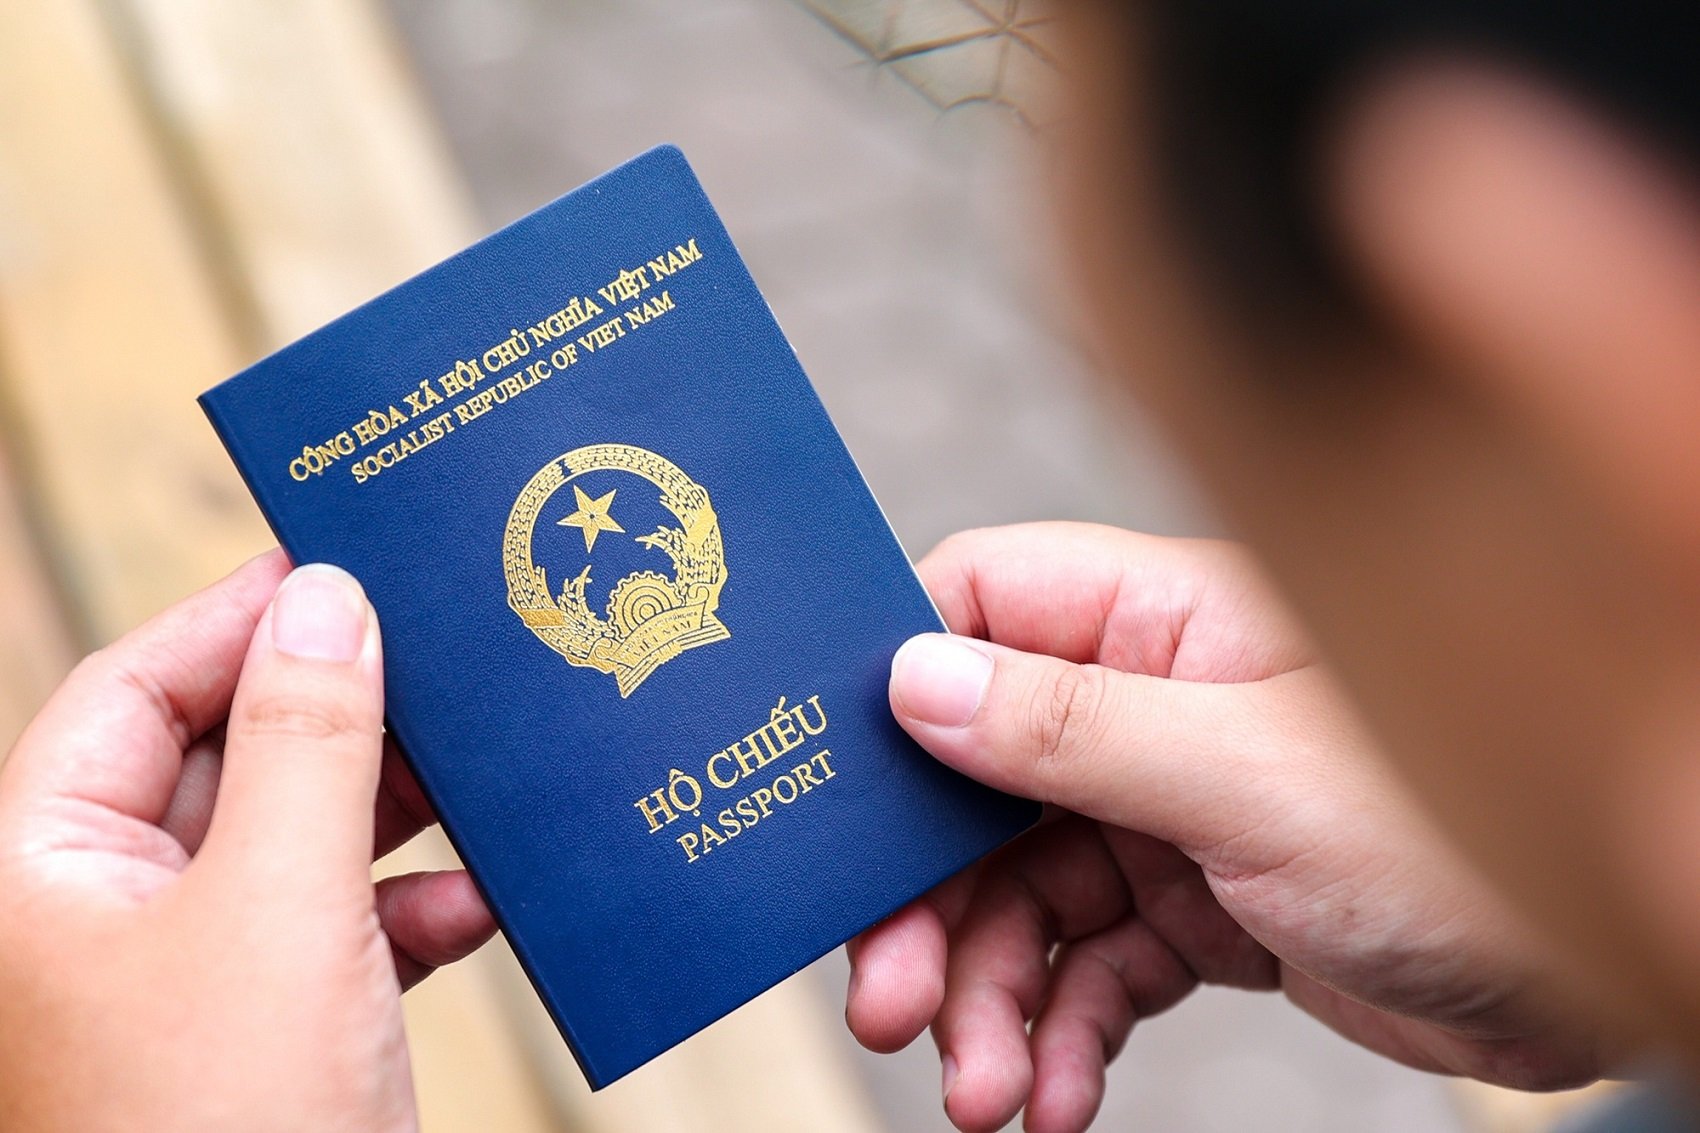 renew passport in vietnam